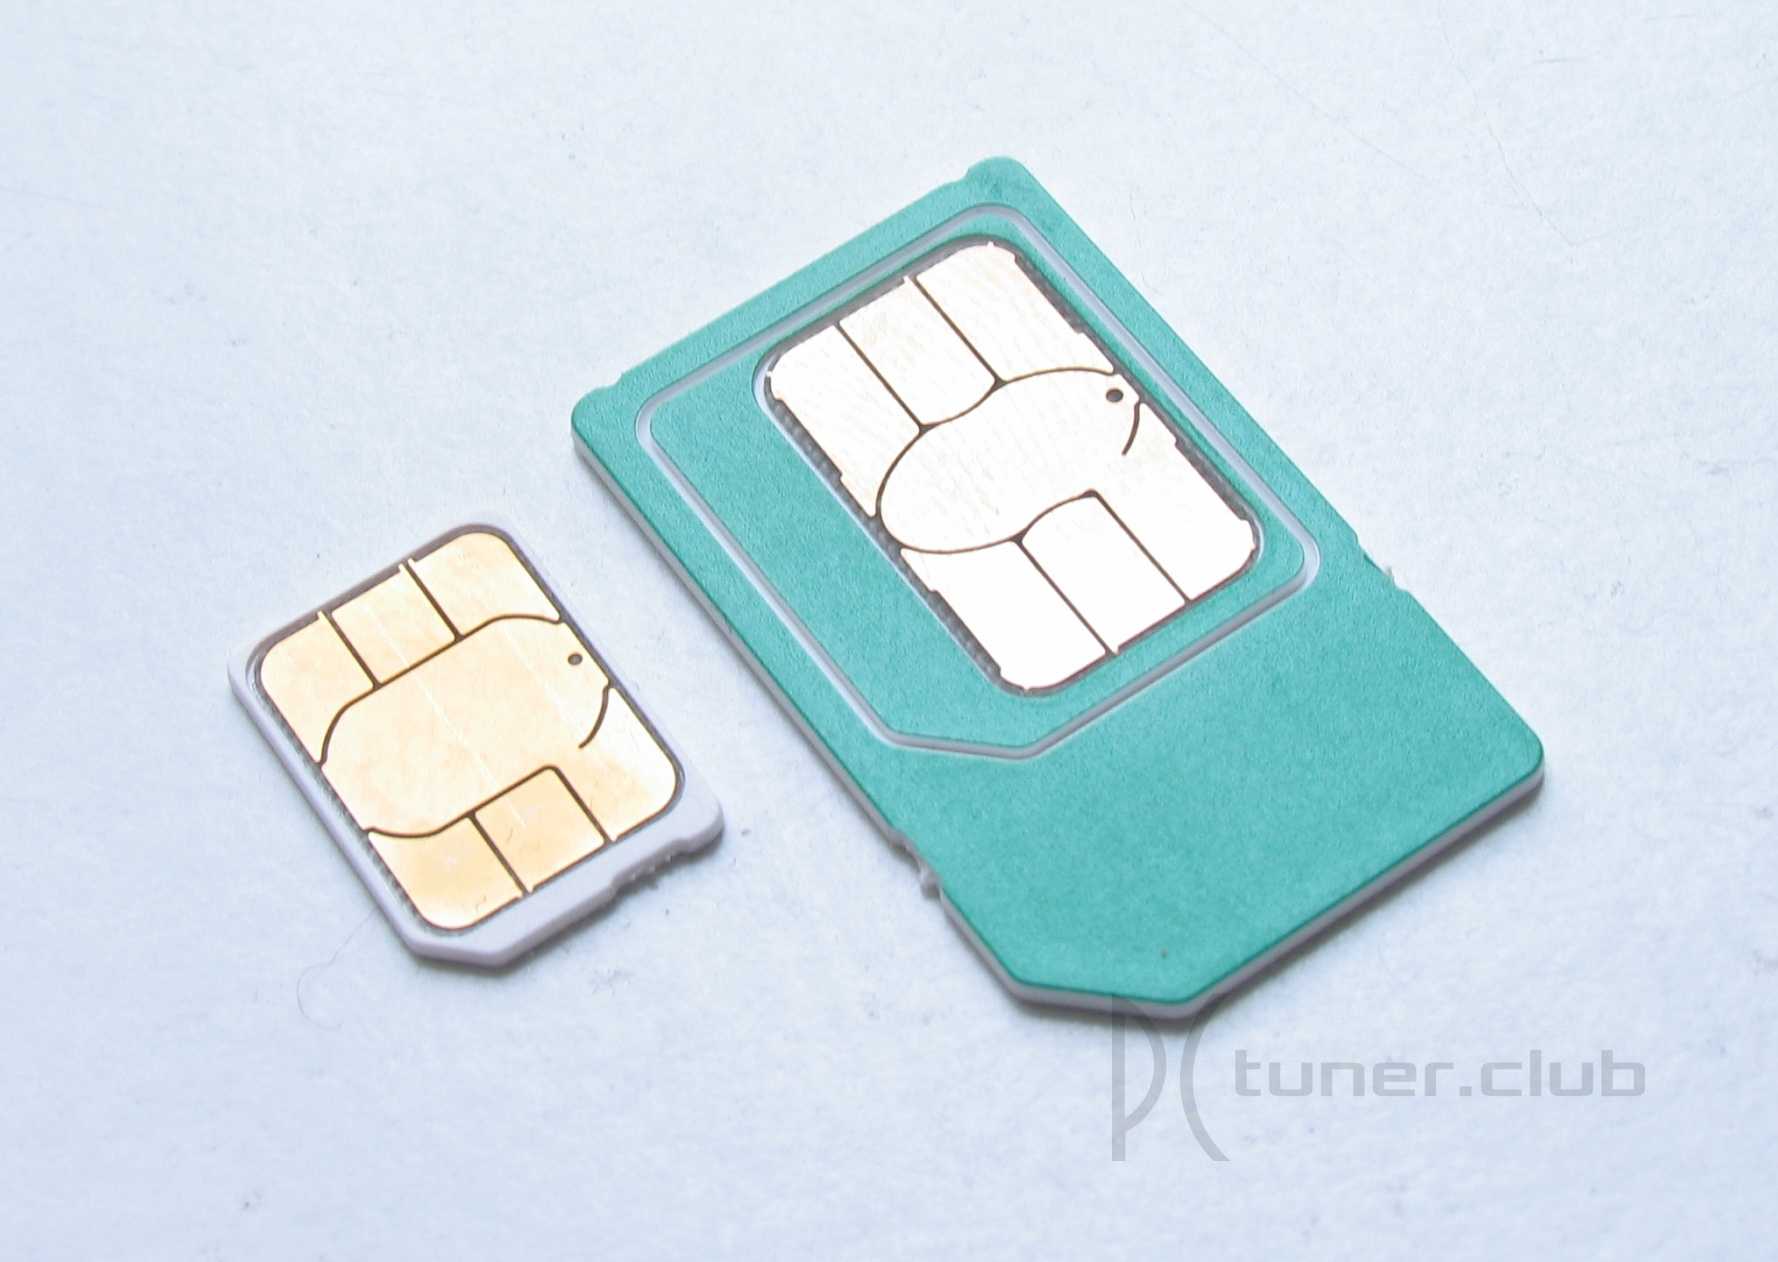 Замена сим-карты мегафон на нано или микро— цена услуги и что делать если не приходят смс